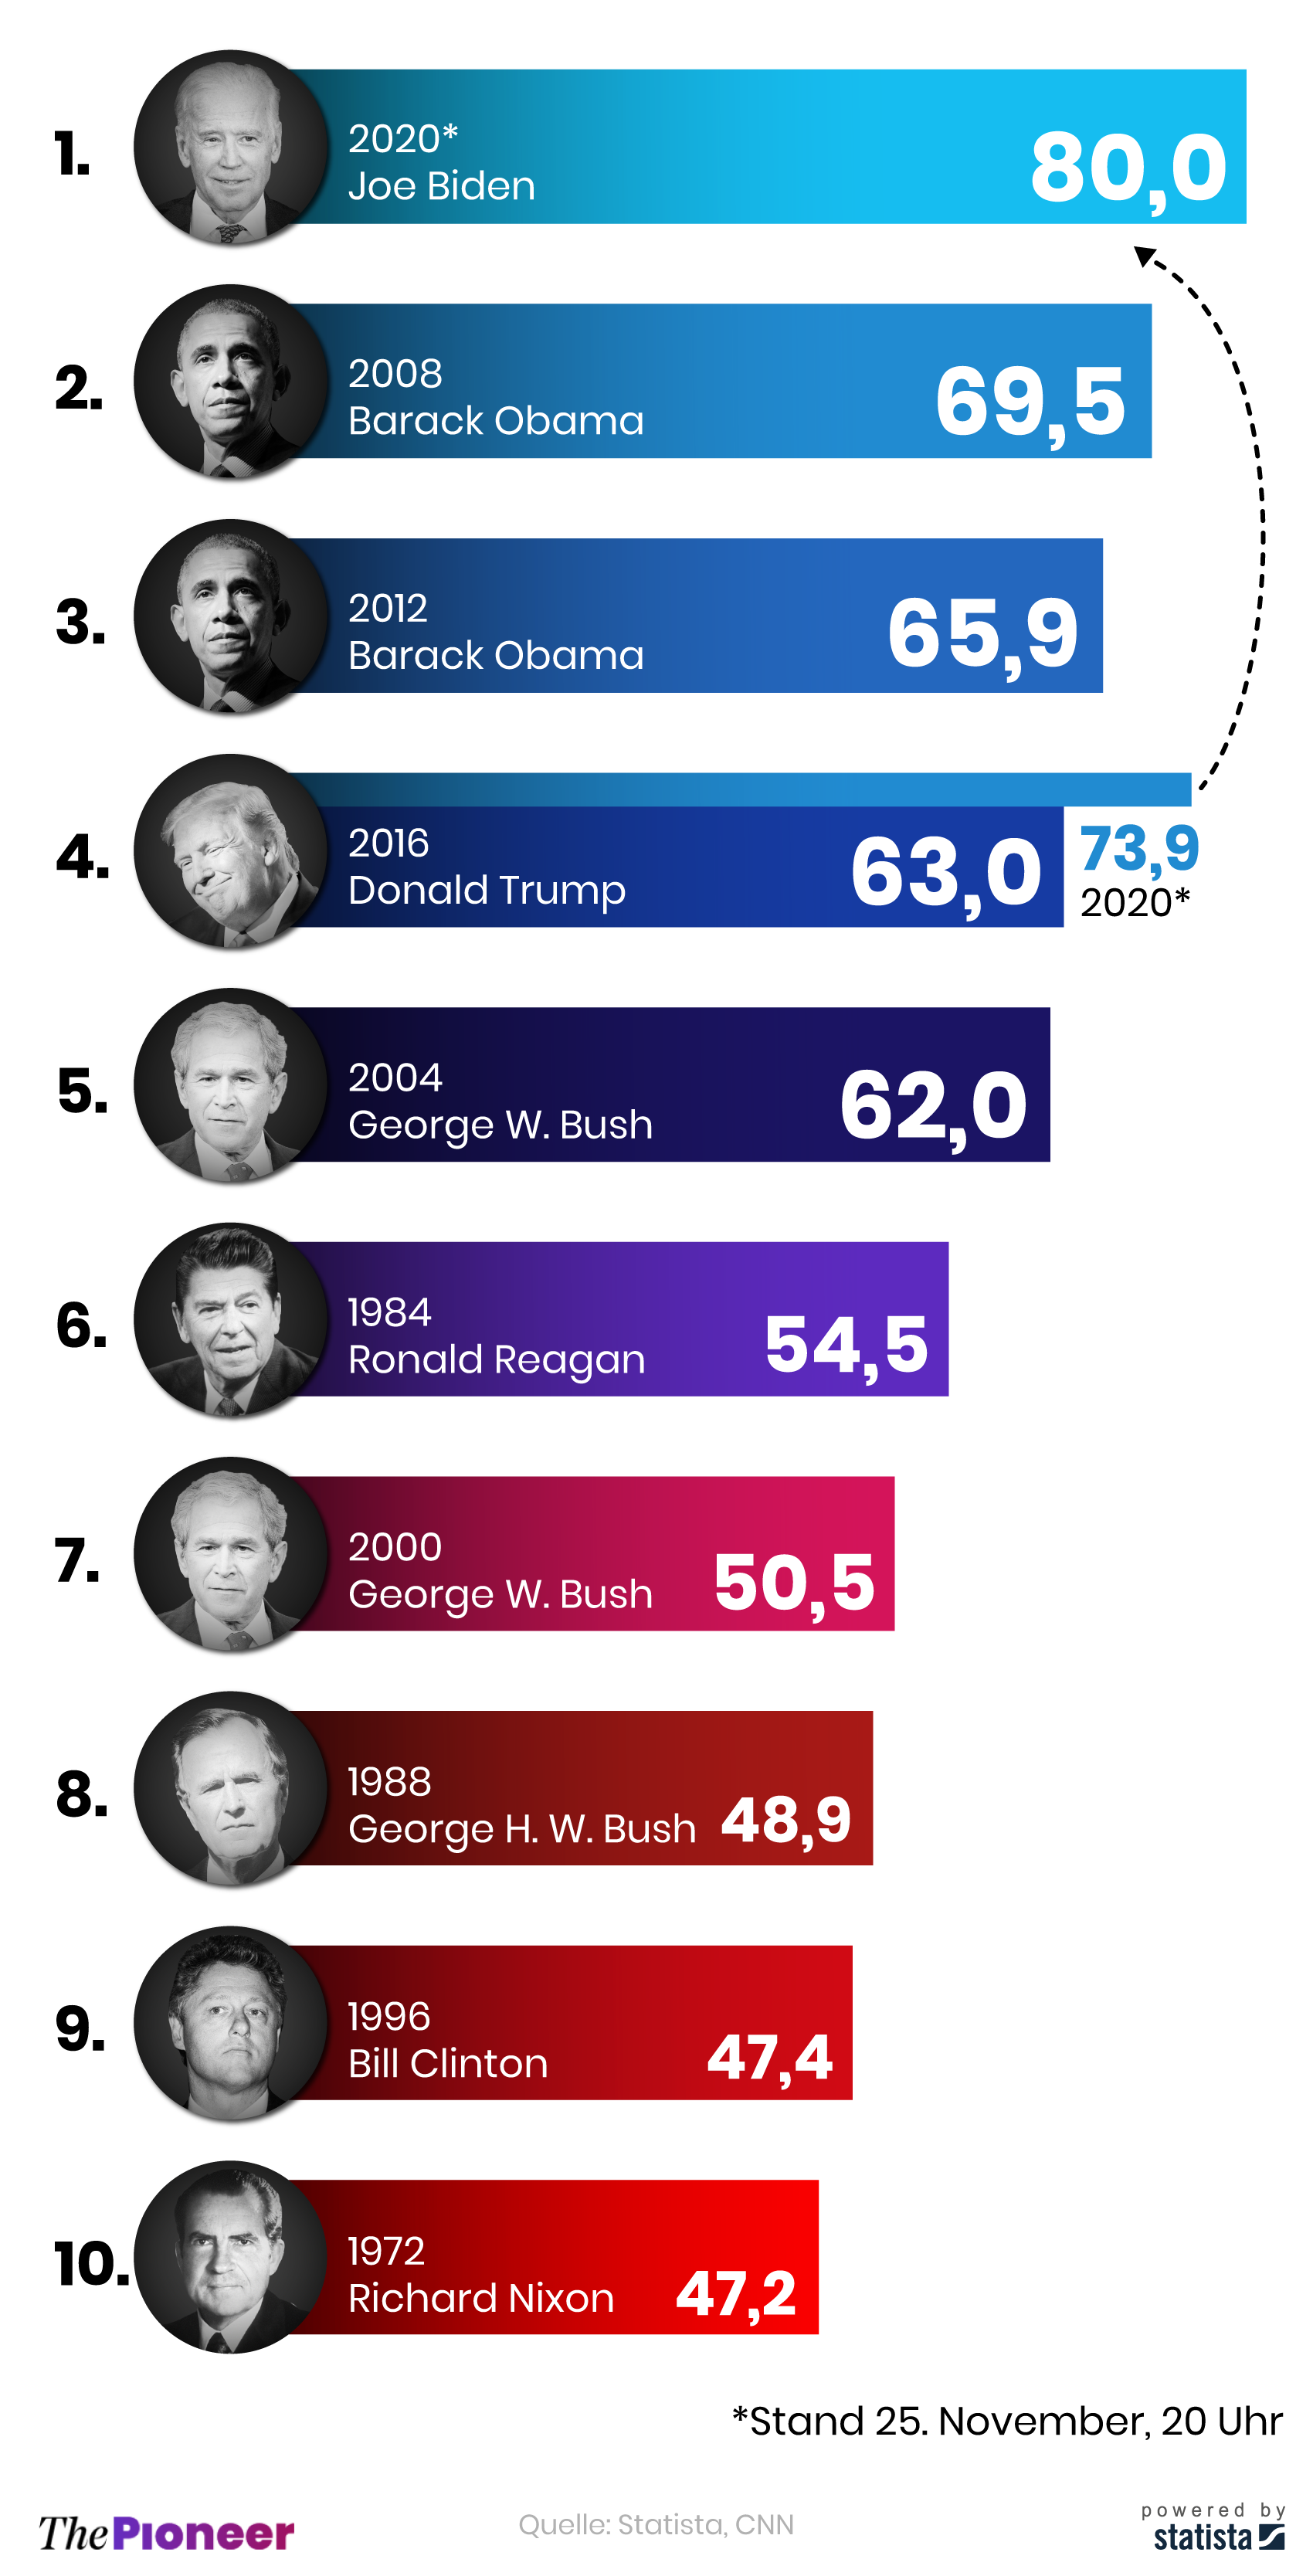 Die zehn Sieger der US-Präsidentschaftswahlen mit dem höchsten "popular vote", in Millionen